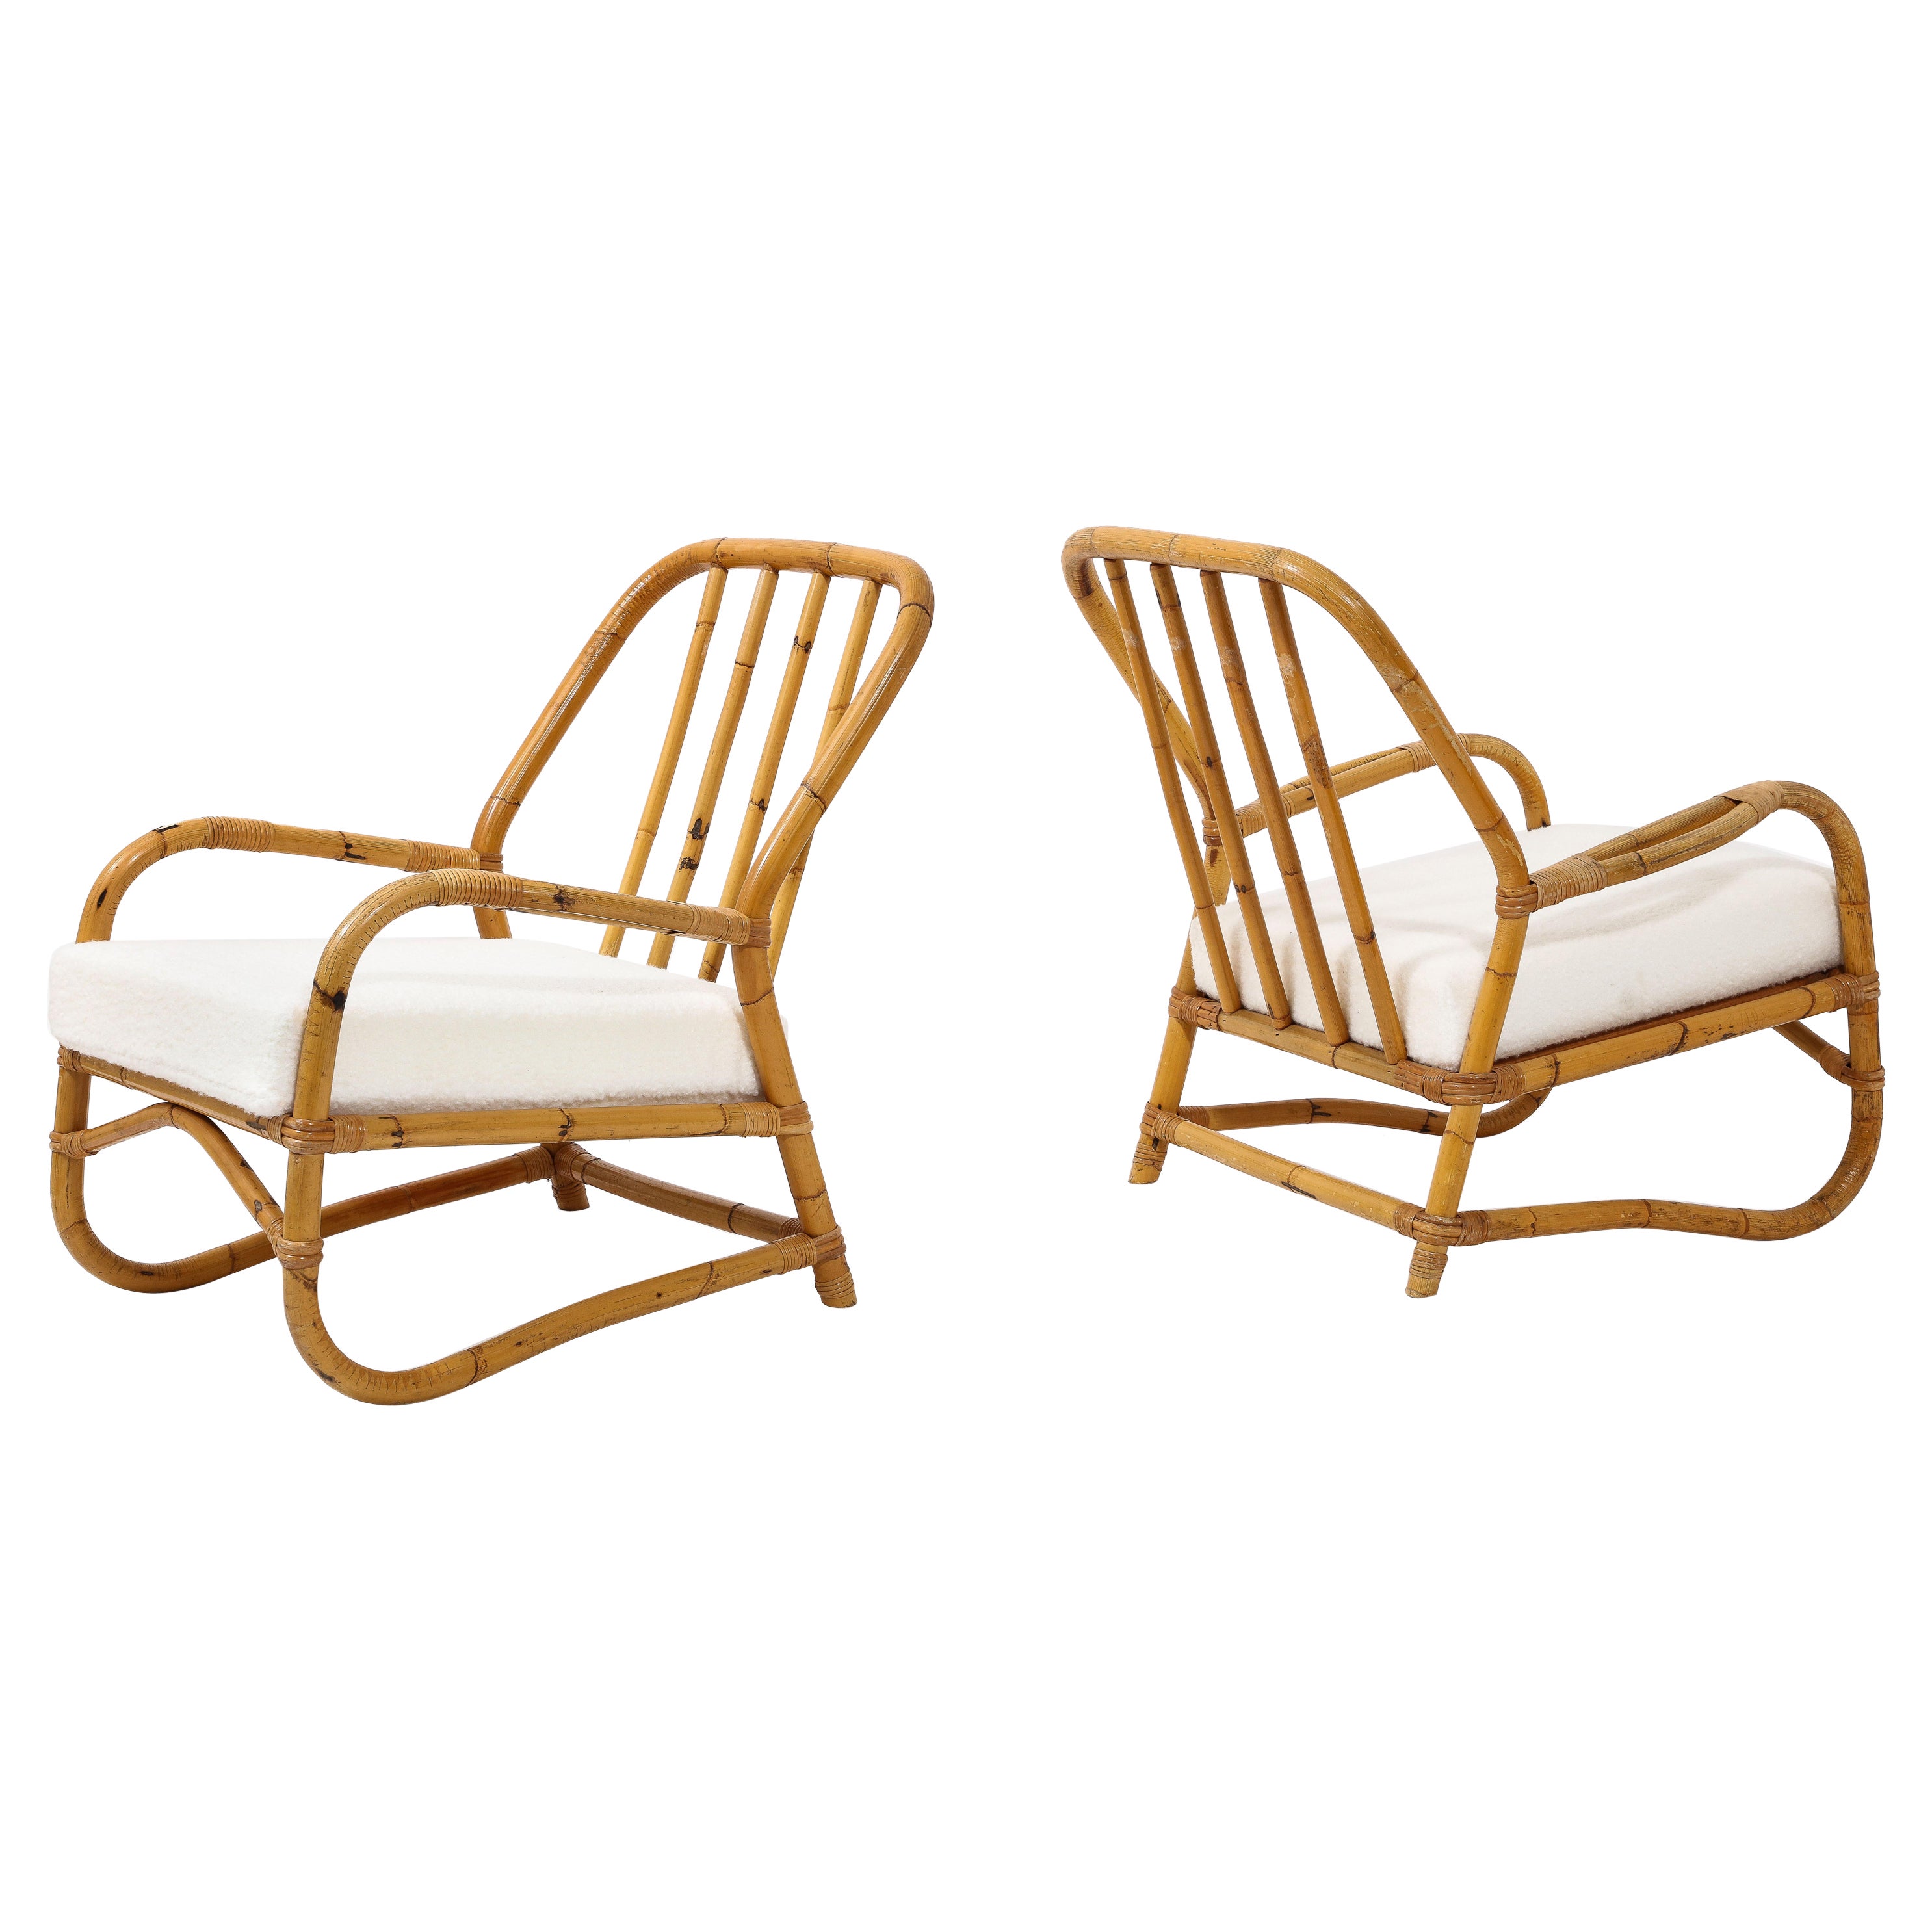 Paire de fauteuils en bambou courbés de style Louis Sognot, France, années 1950